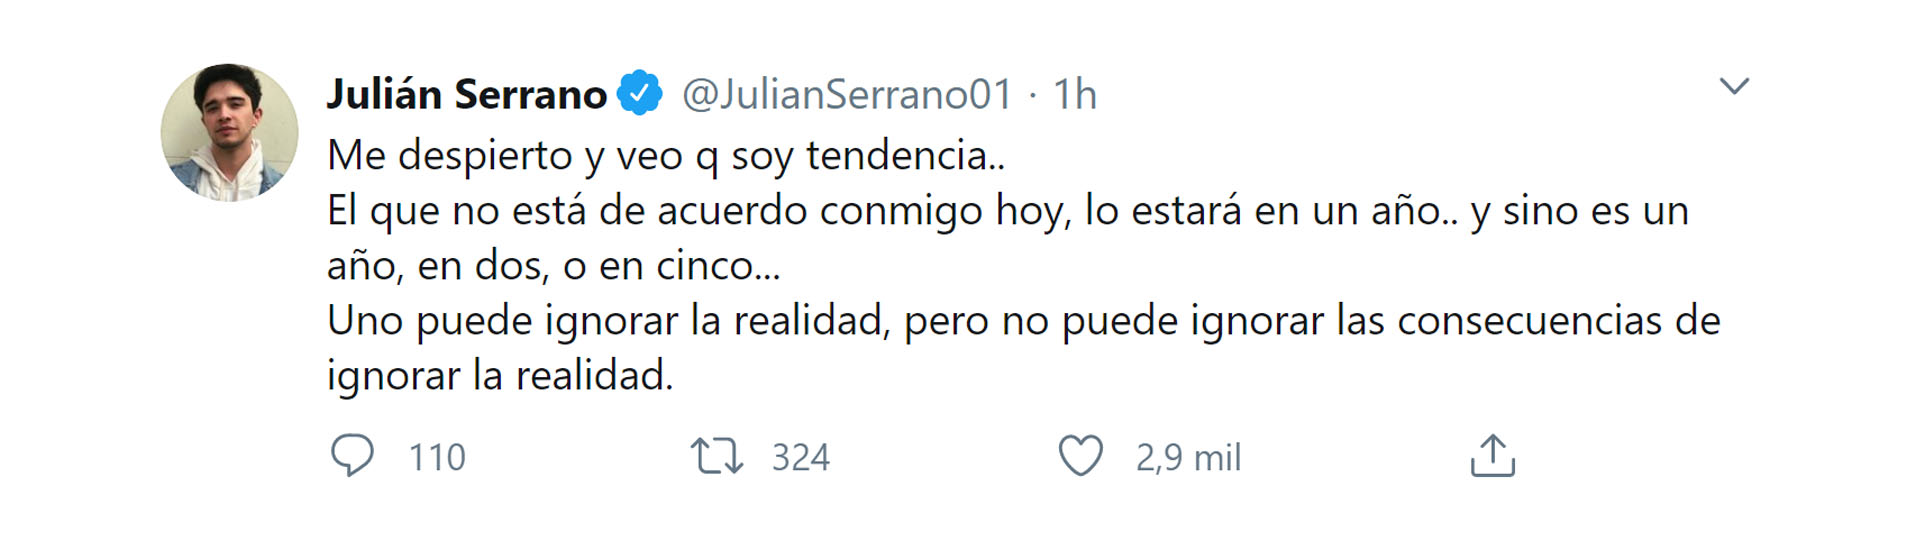 Los mensajes de Julián Serrano